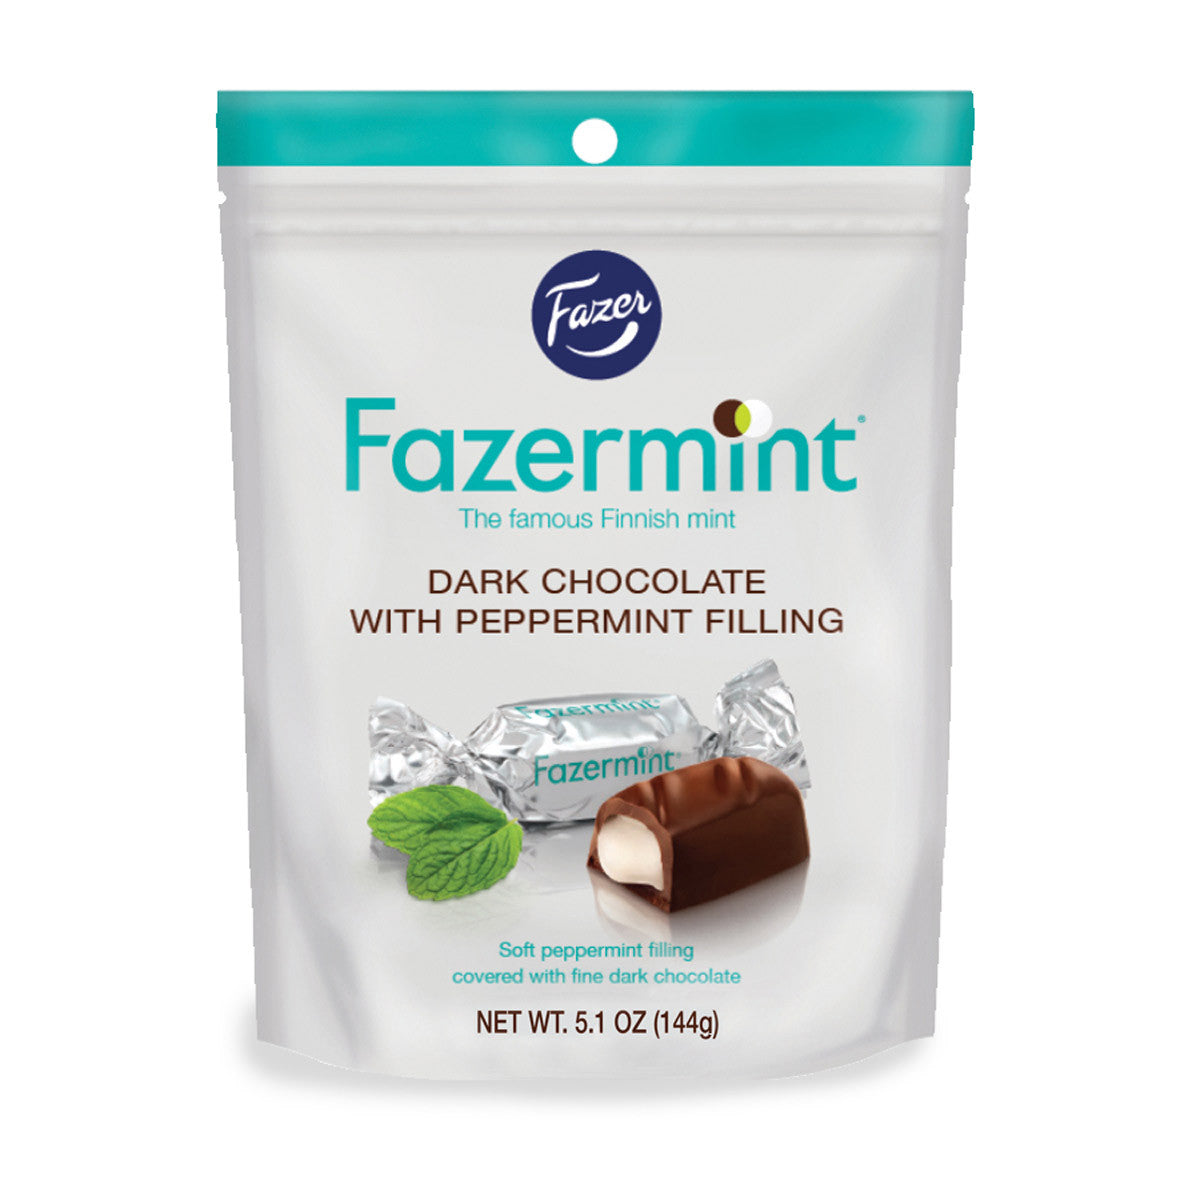 Daim Milk Chocolate Covered Crunchy Caramel Candy 7.05-ounce (200g) Bags 